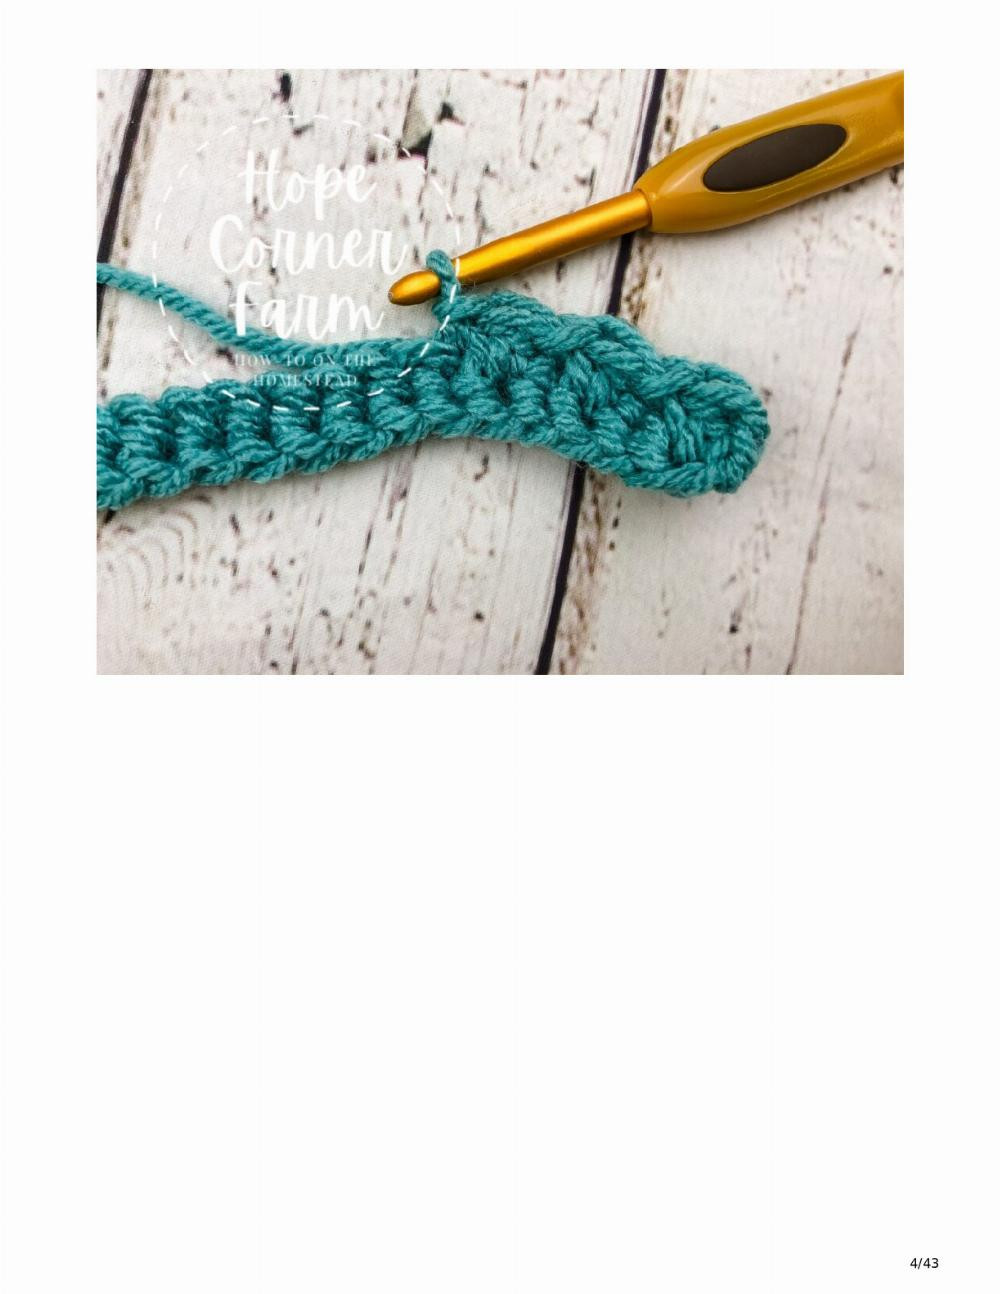 Textured Twist Crochet Headband Free Pattern